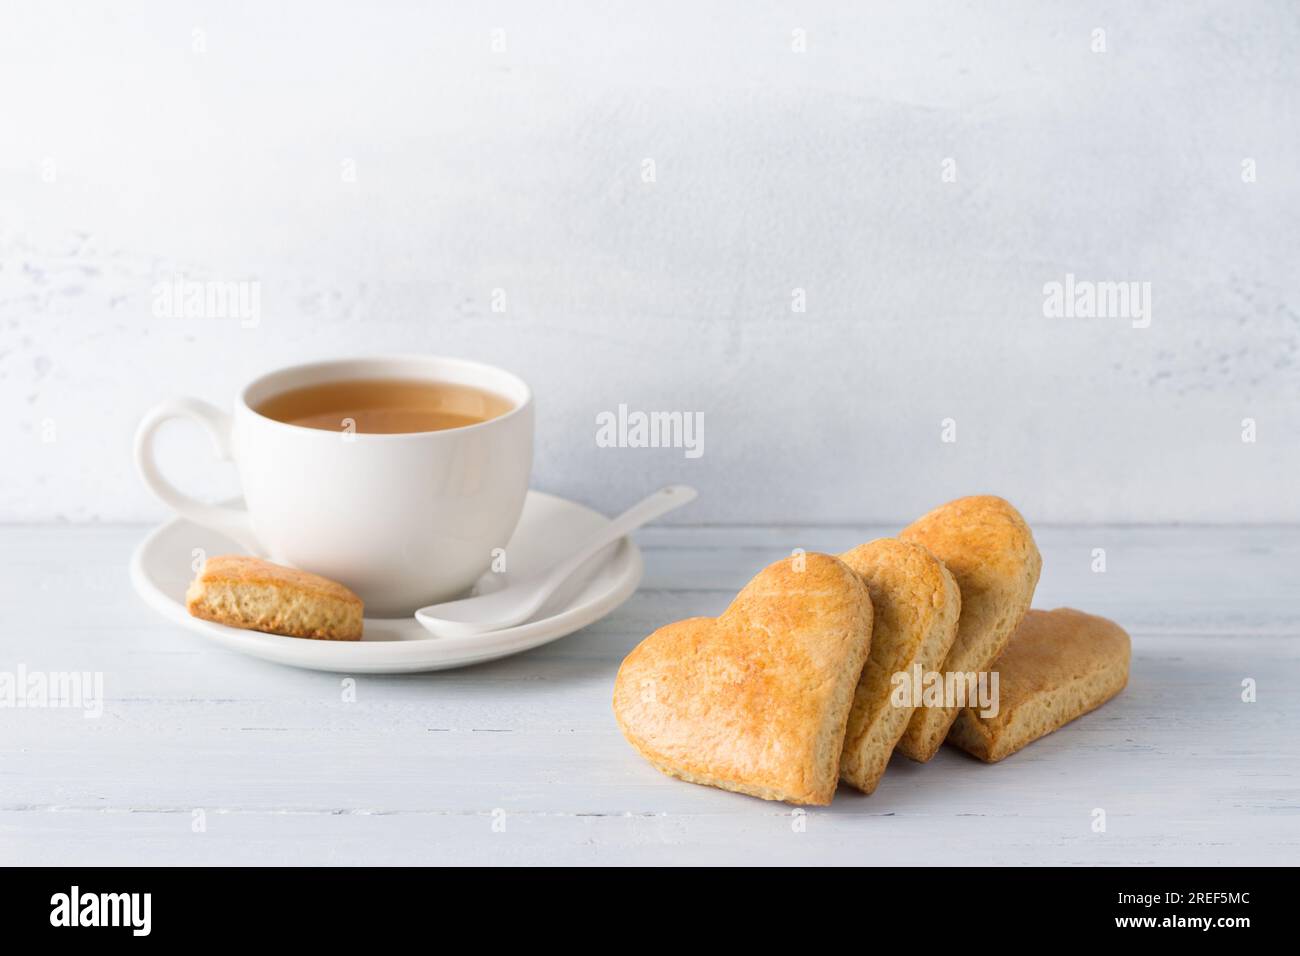 Galletas de shortbread en forma de corazón con una taza de té sobre un fondo azul claro. día de la cookie. Foto de stock